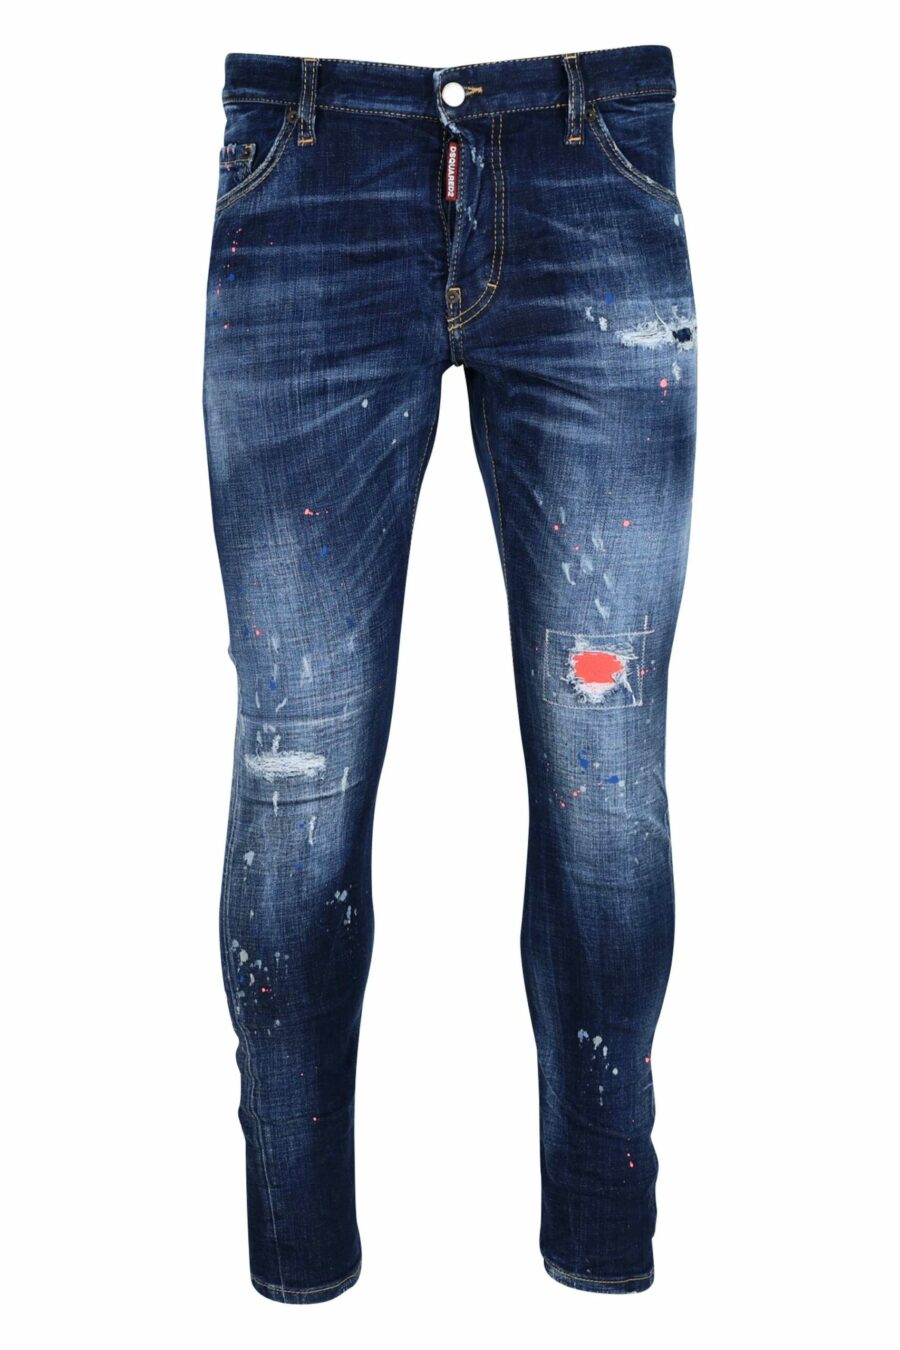 Jean bleu "sexy twist jean" porté avec de la peinture orange - 8054148308292 à l'échelle